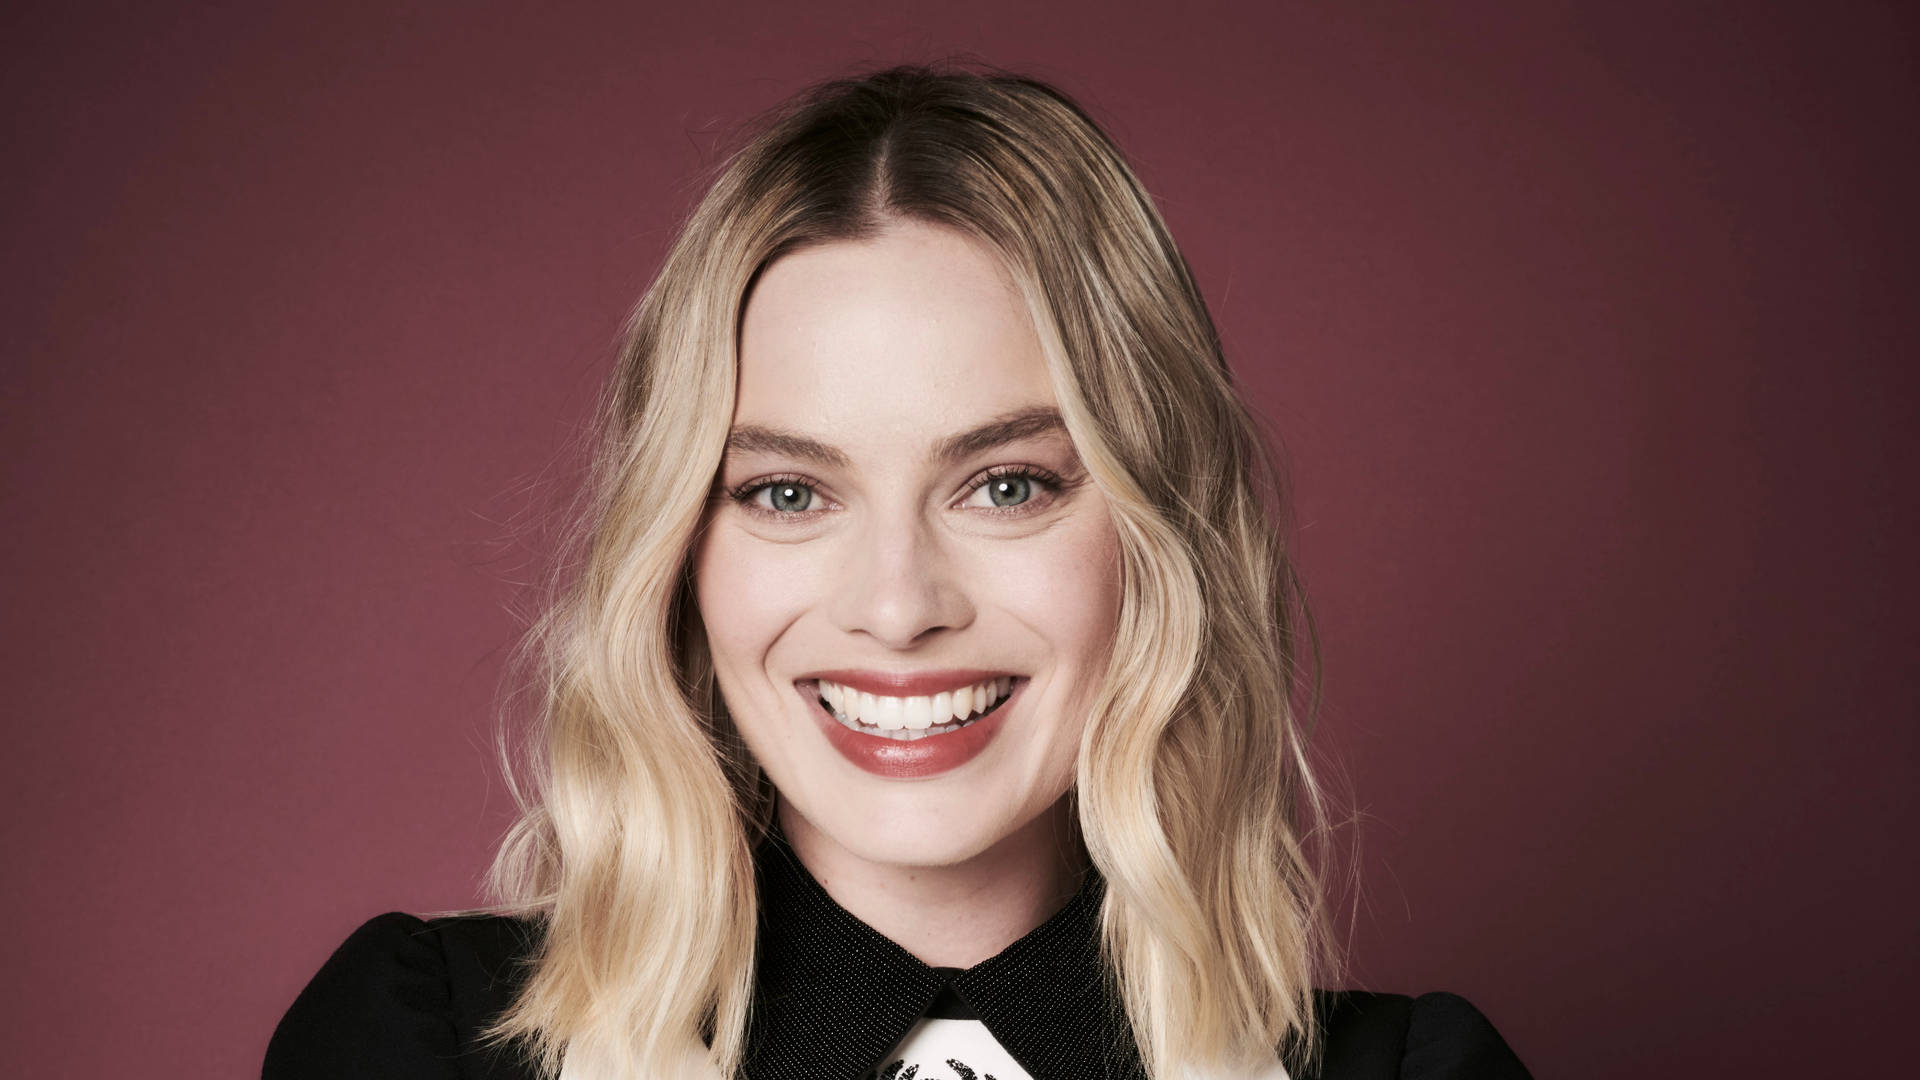 Smiling Margot Robbie Portrait